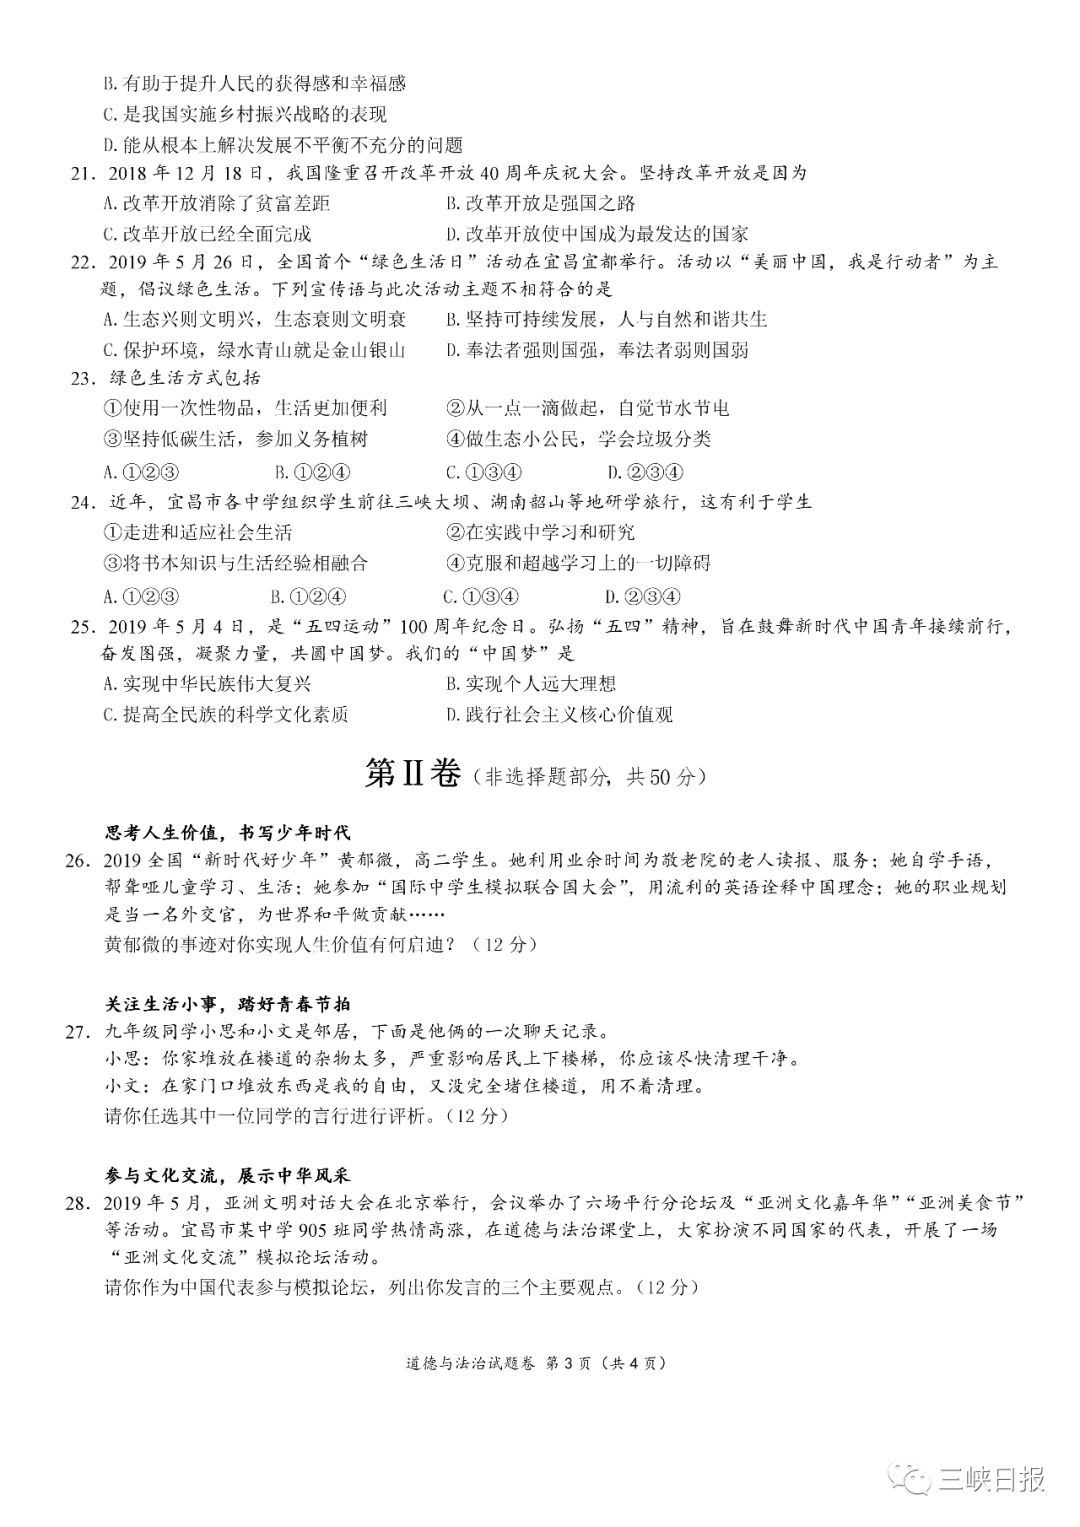 2019湖北宜昌中考《道德与法制》真题及答案已公布